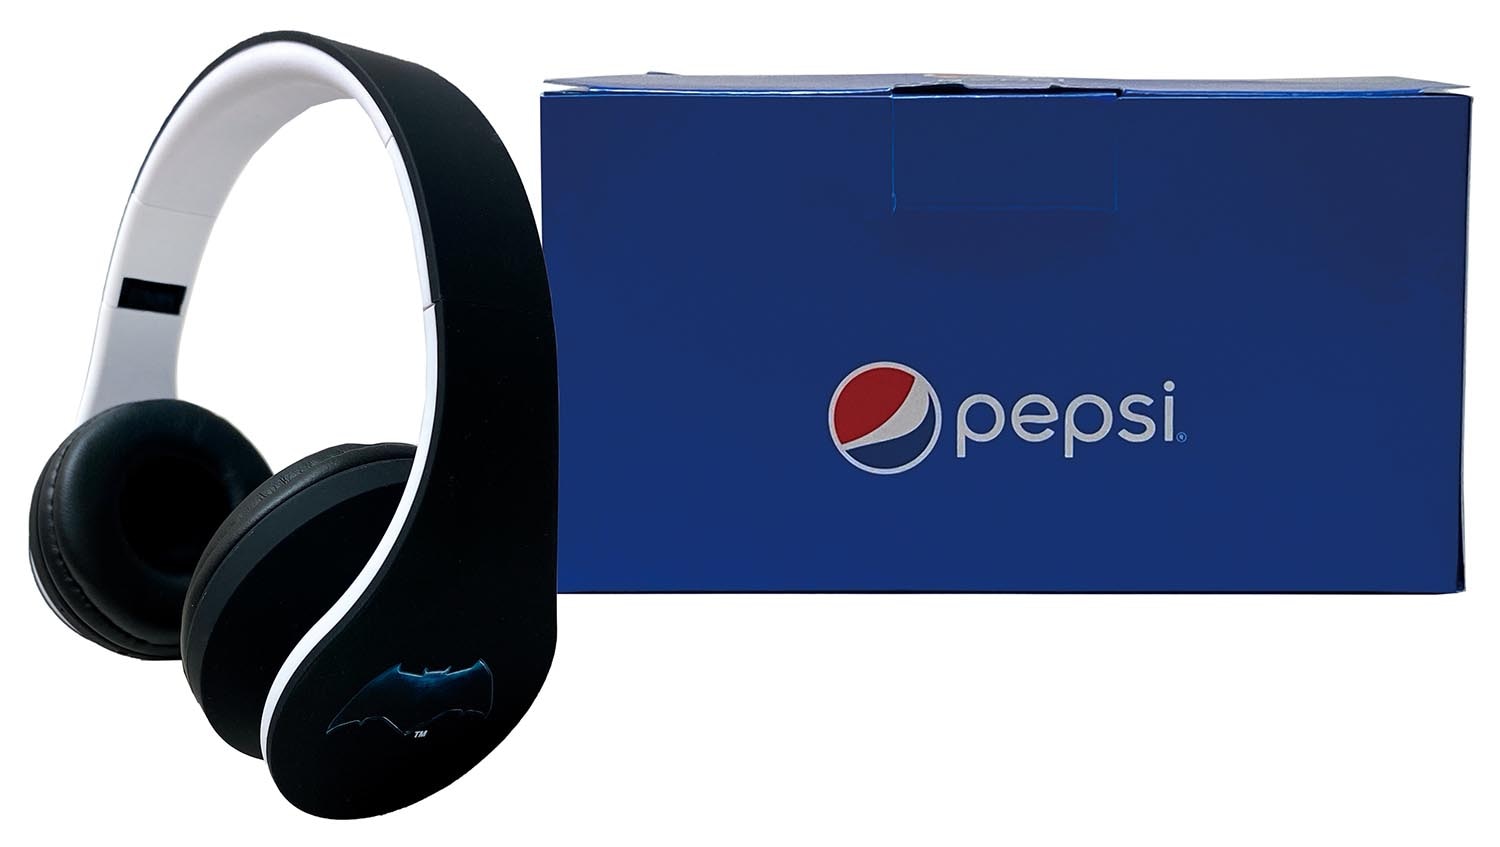 Pepsi×映画『ジャスティス・リーグ』」限定ヘッドホン ザ・フラッシュ 